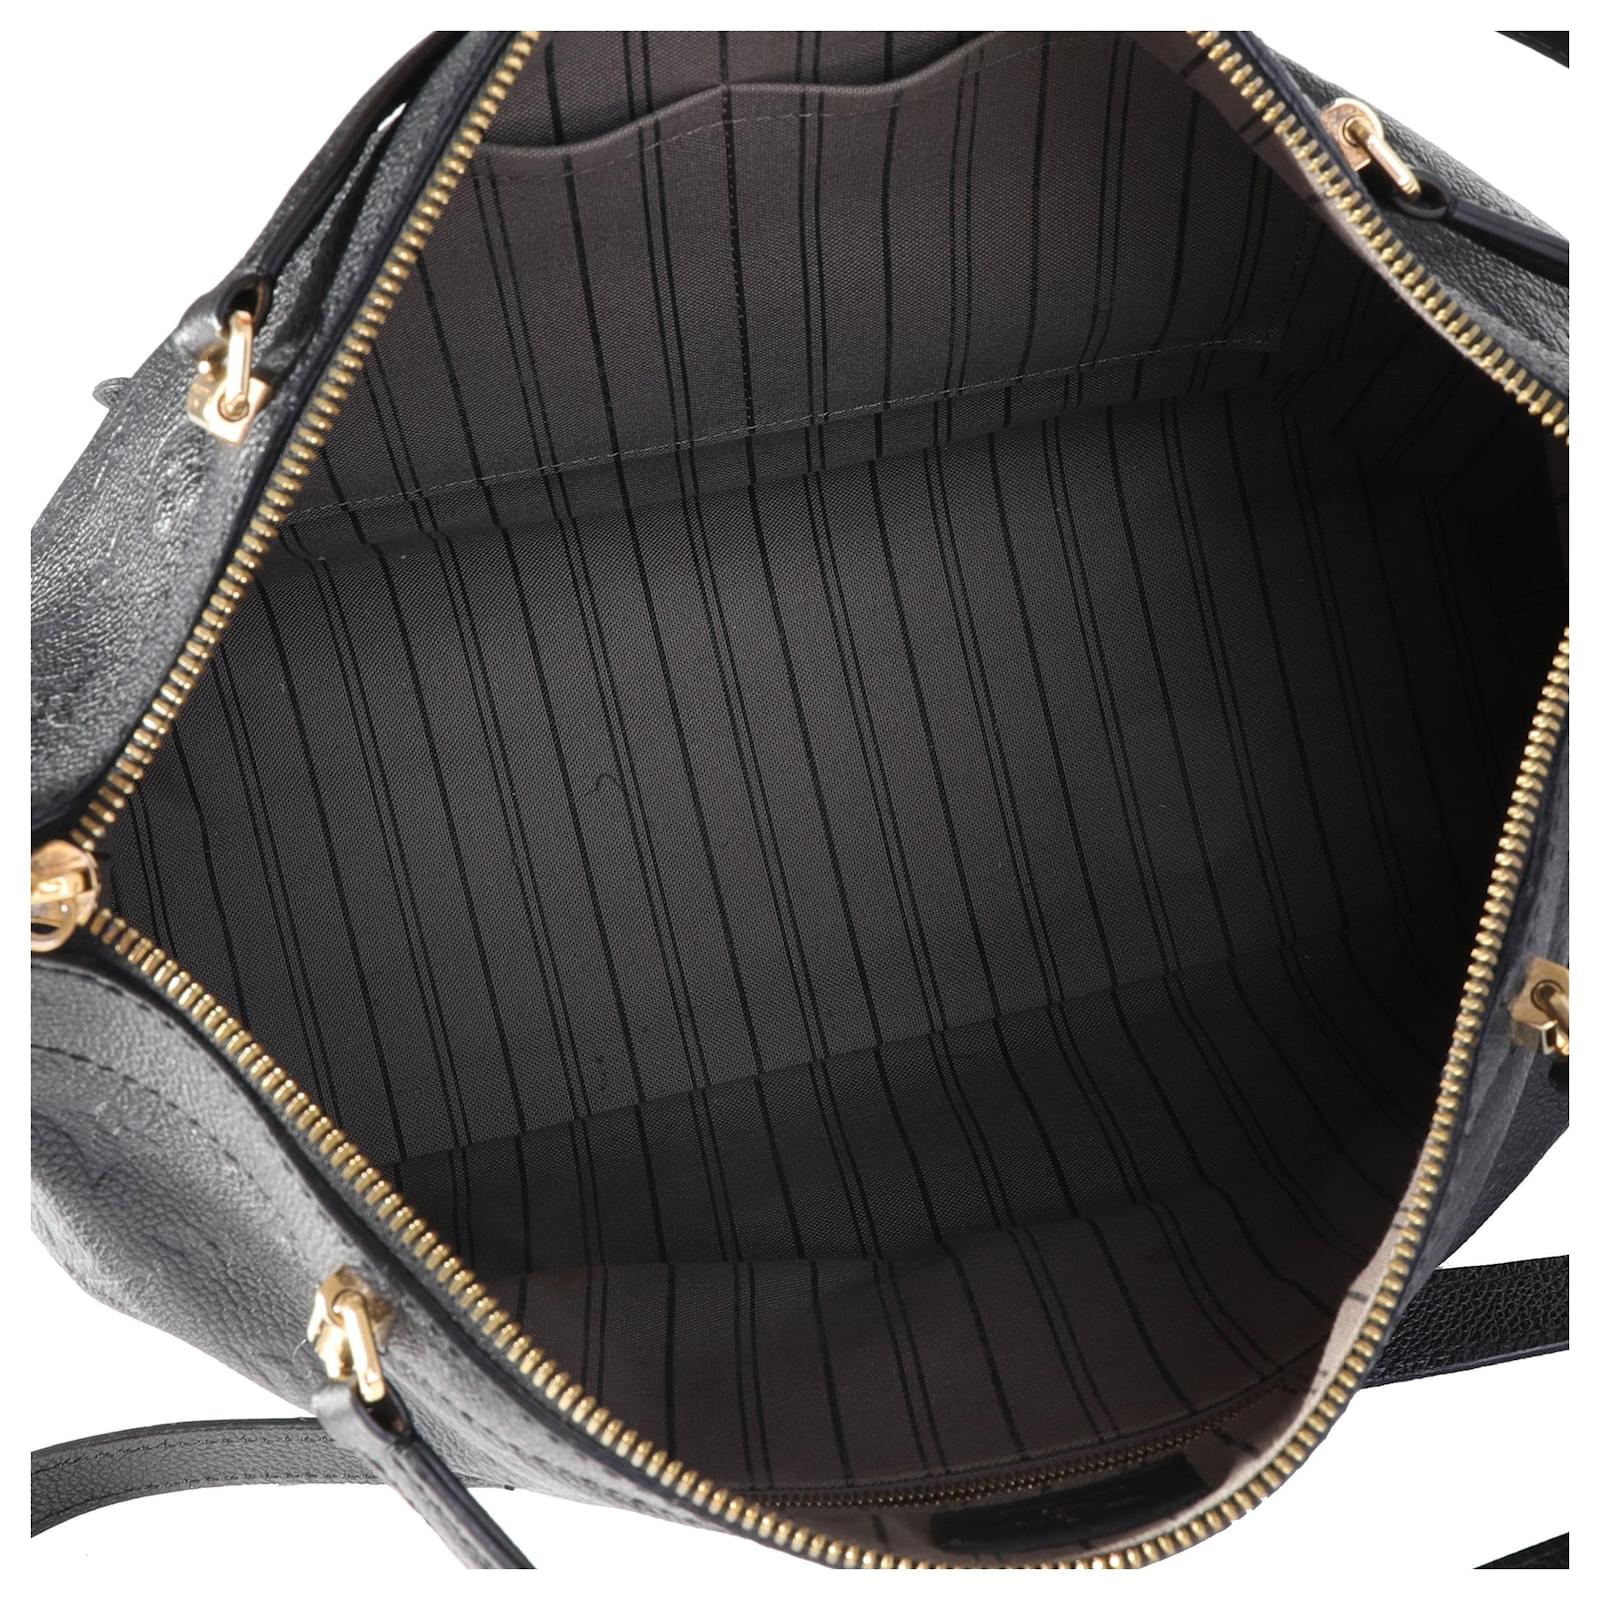 Buy Online Louis Vuitton-EMPREINTE BASTILLE MM-M41167 at